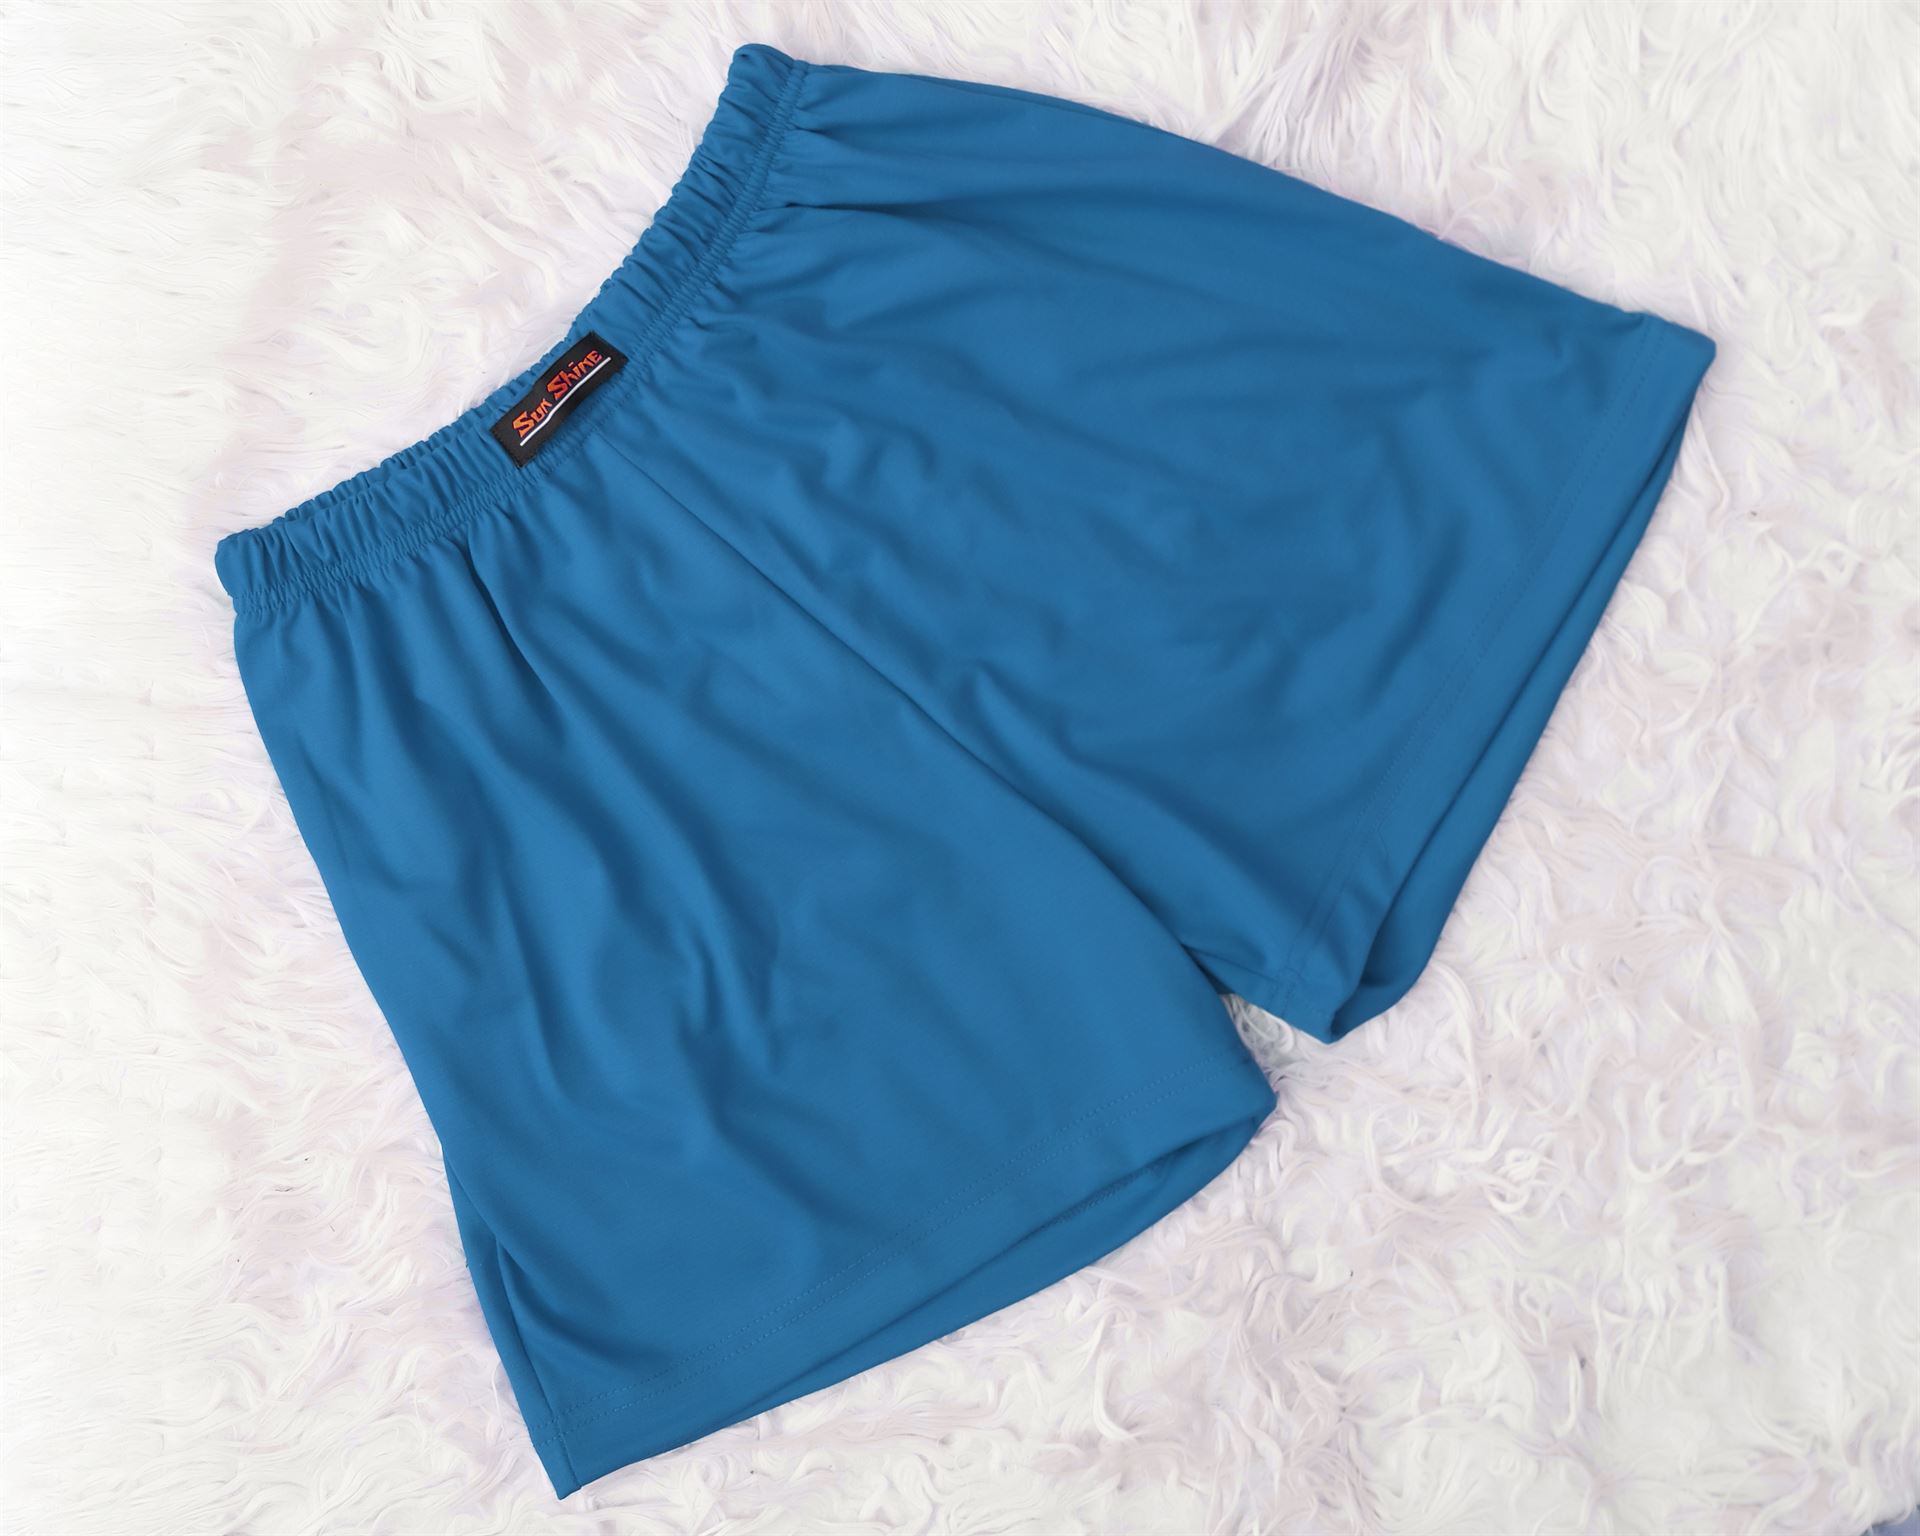 Jersey Boxer Shorts Teal | Pajamas - Nightwears